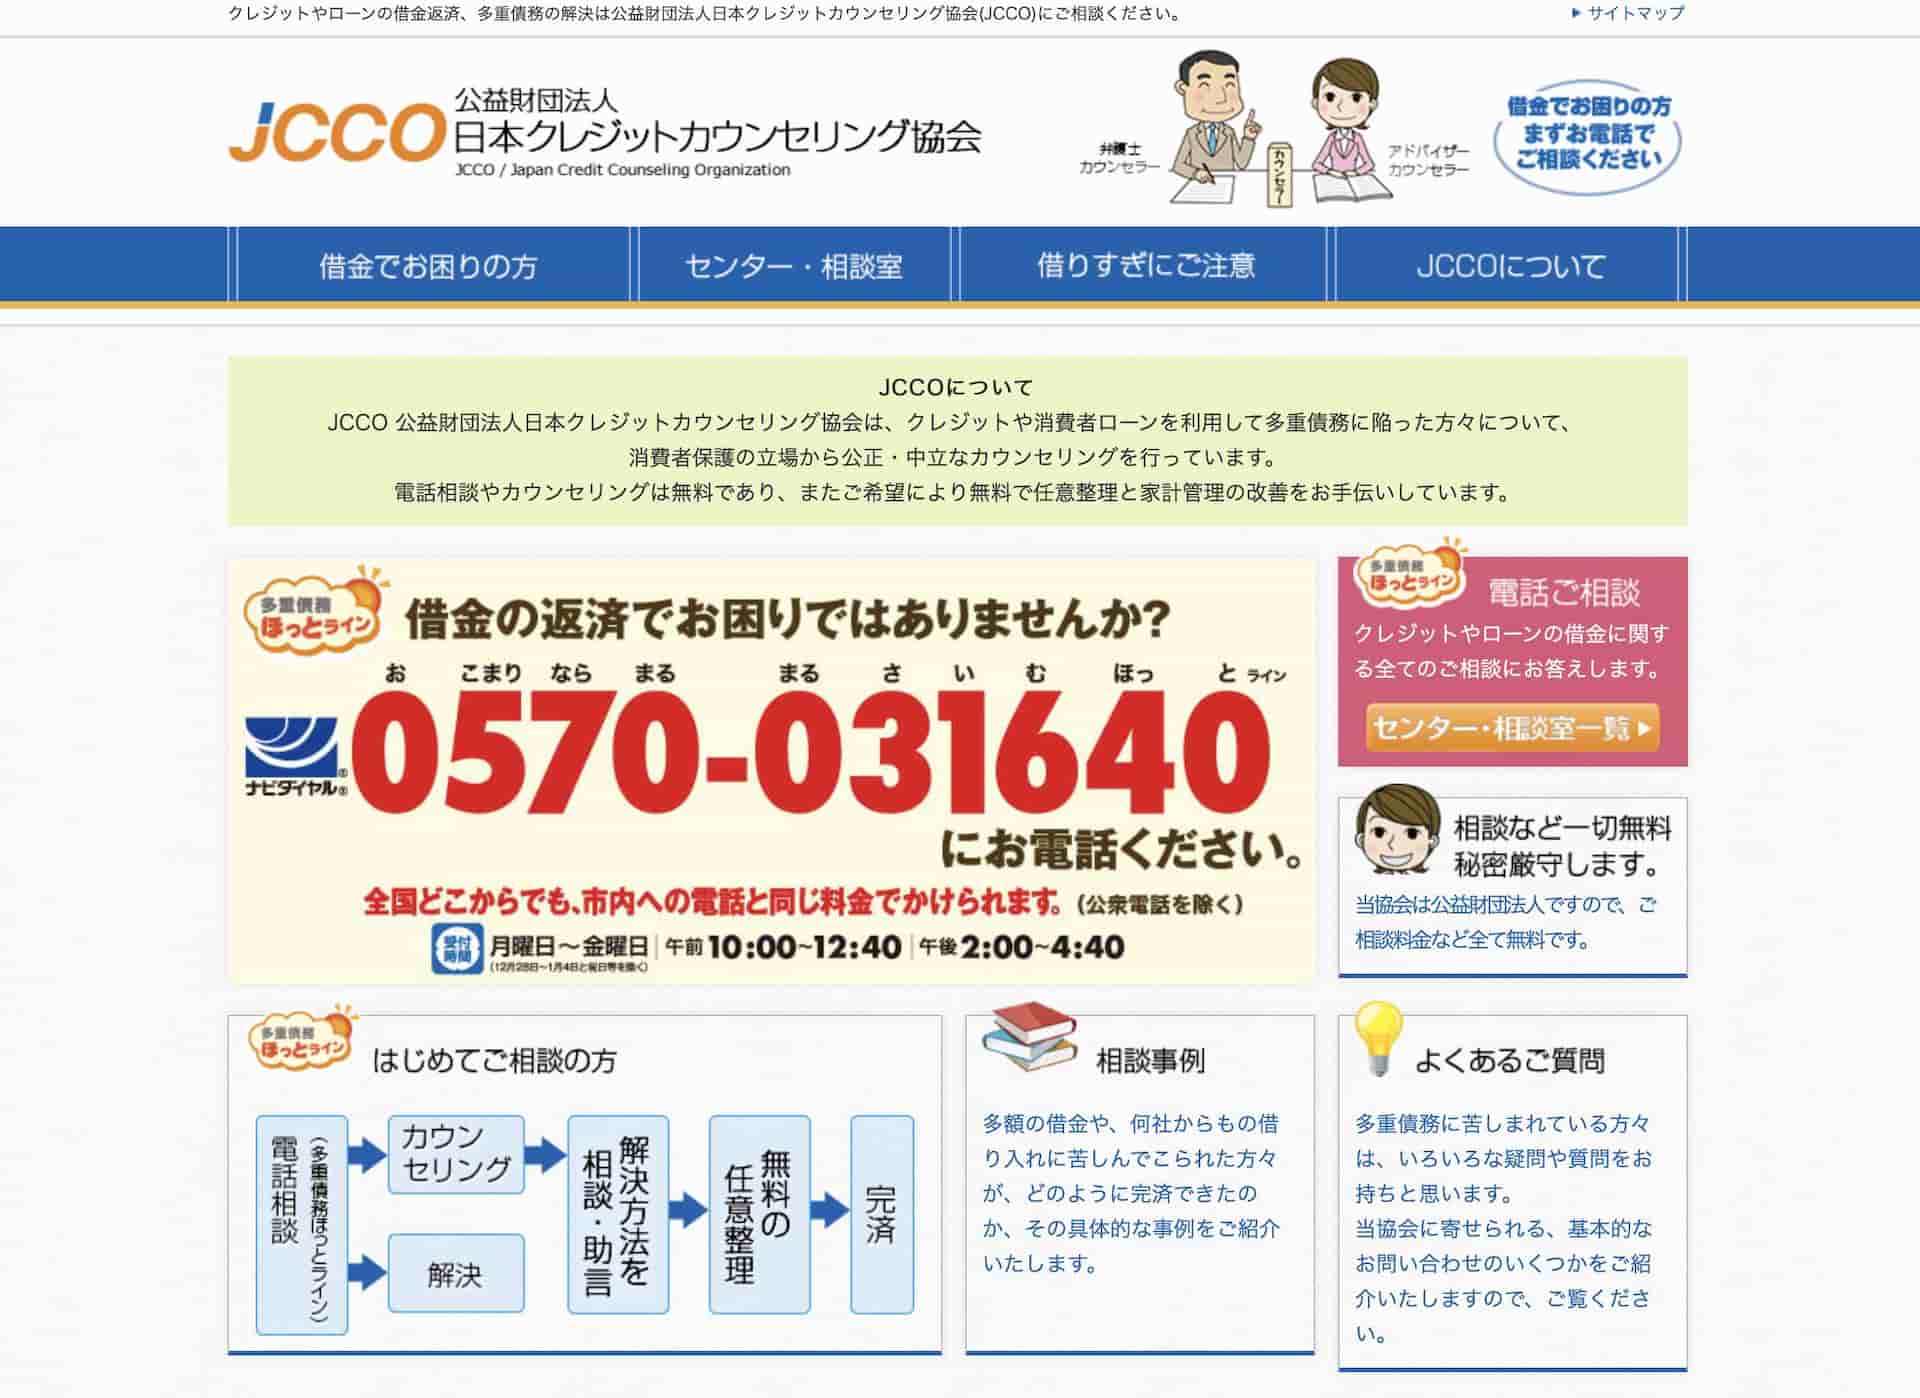 JCCO 日本クレジットカウンセリング協会